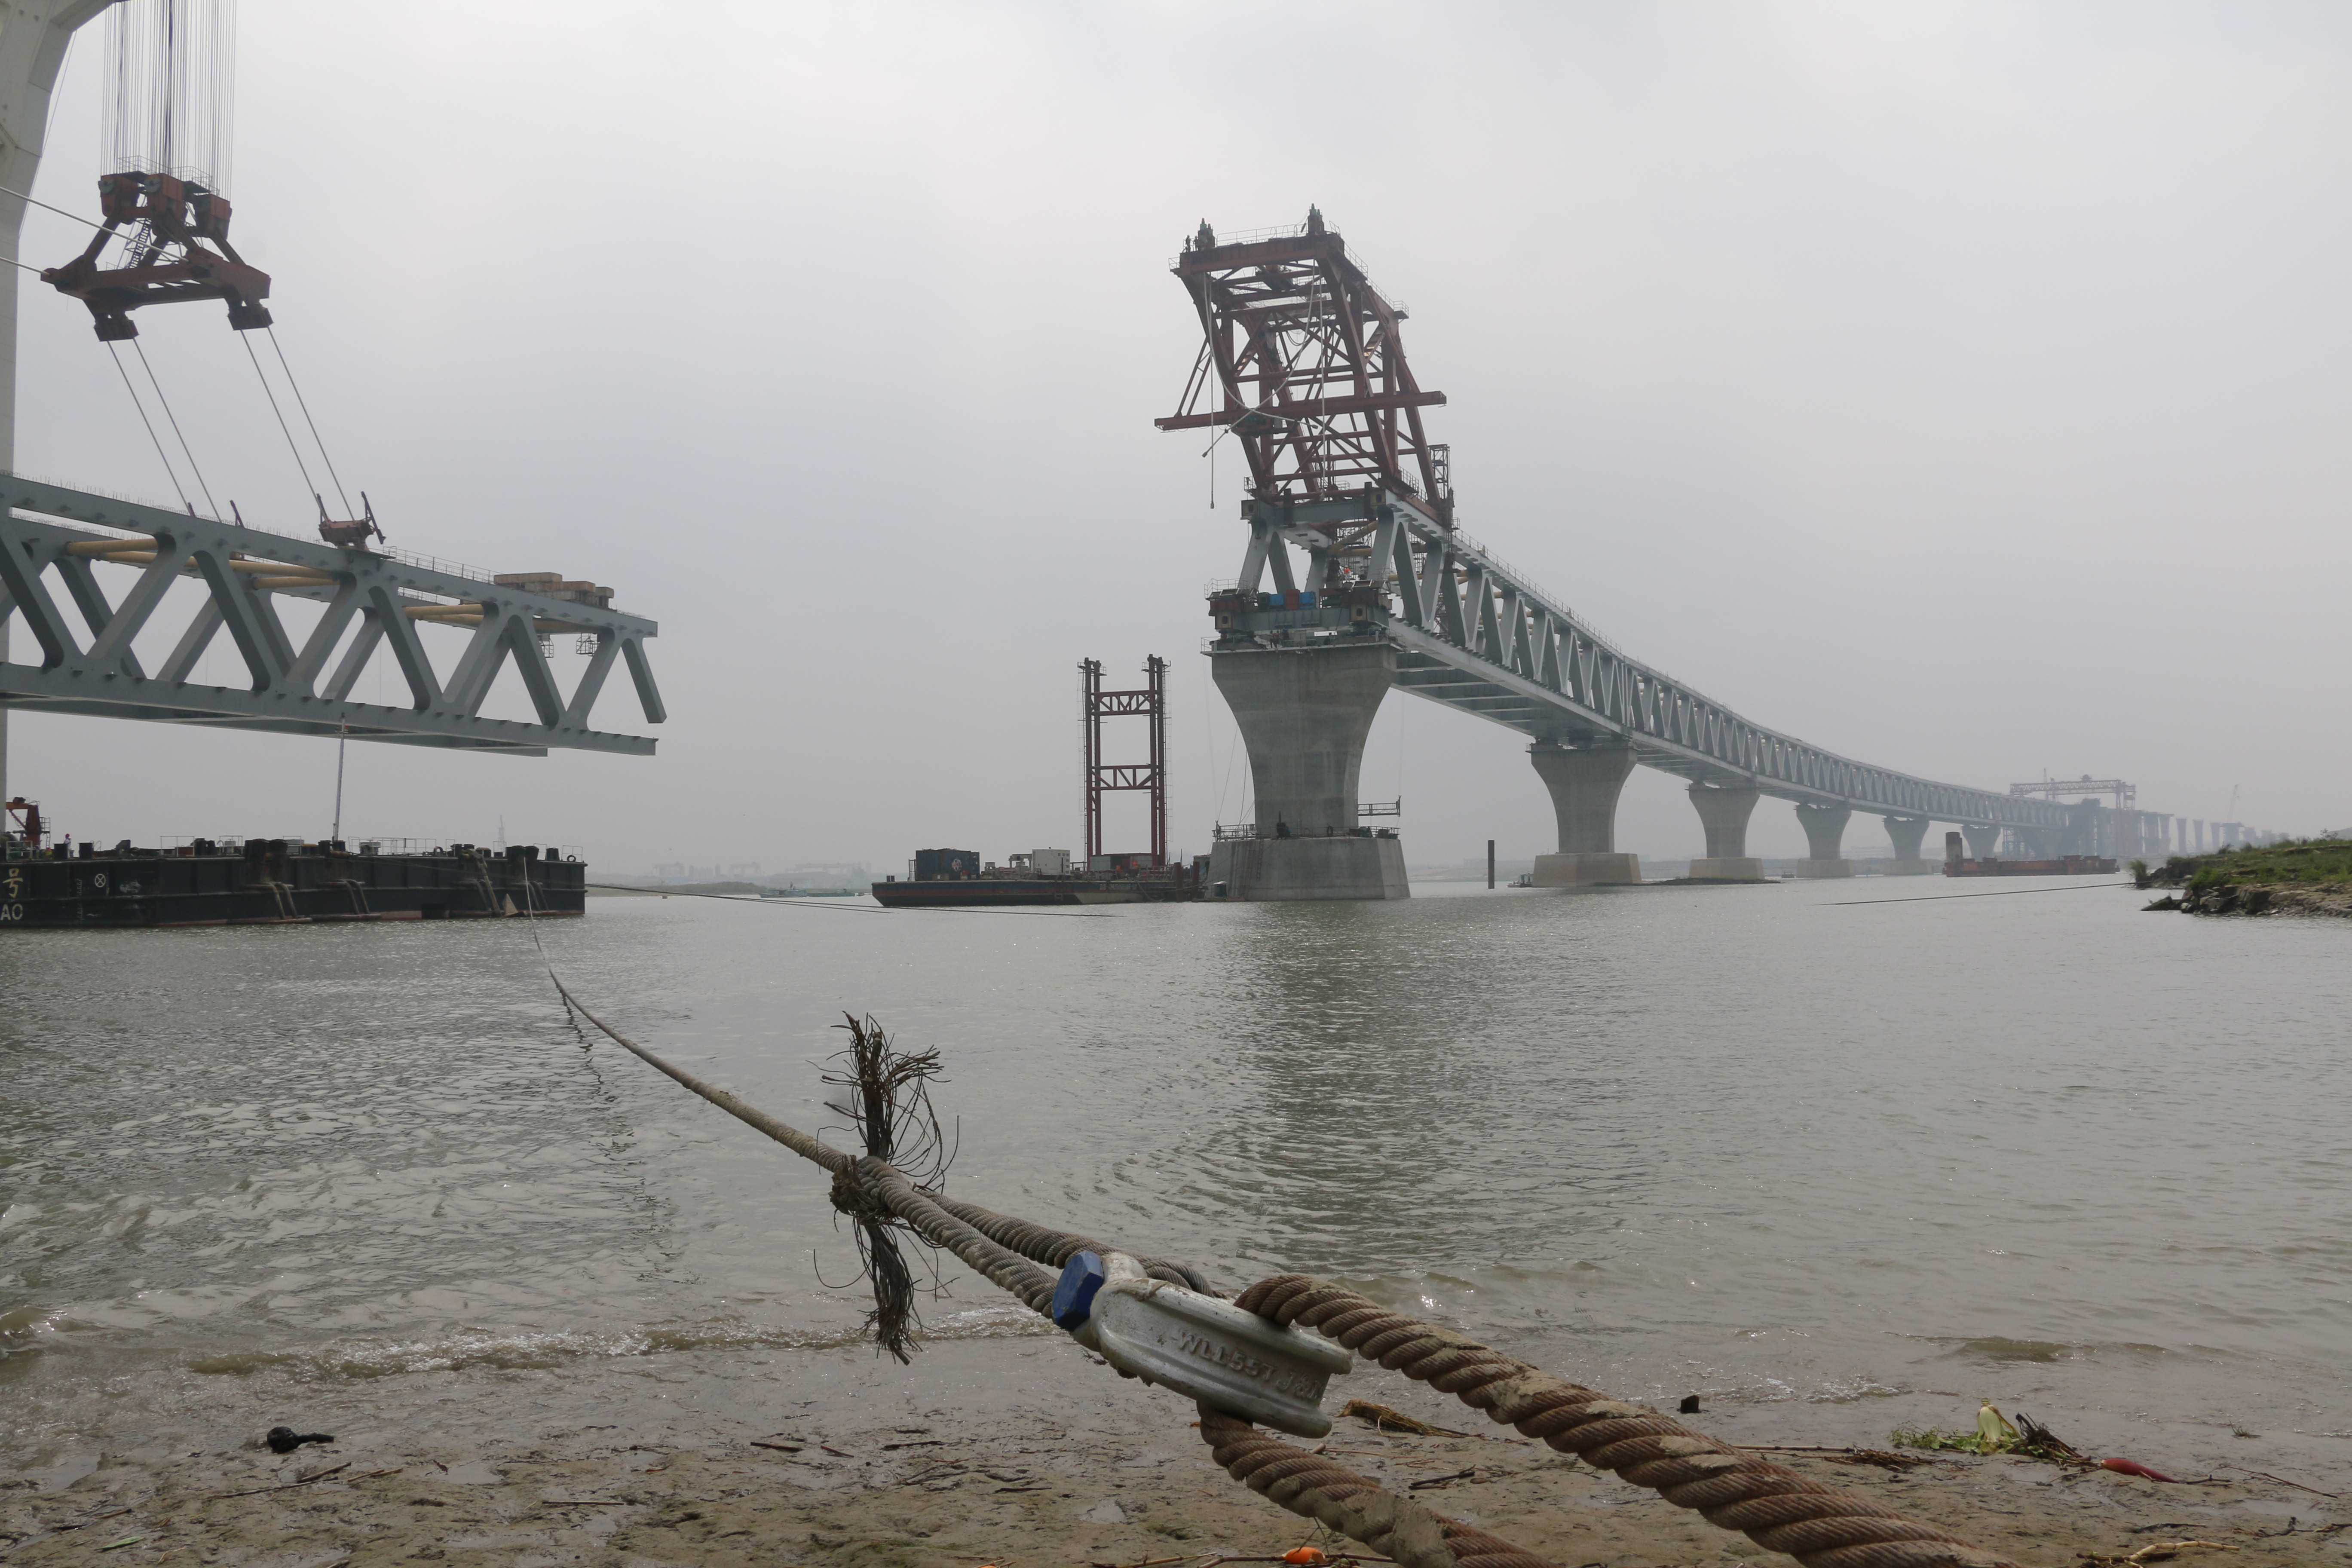 孟加拉国帕德玛大桥项目第七跨钢梁架设完成